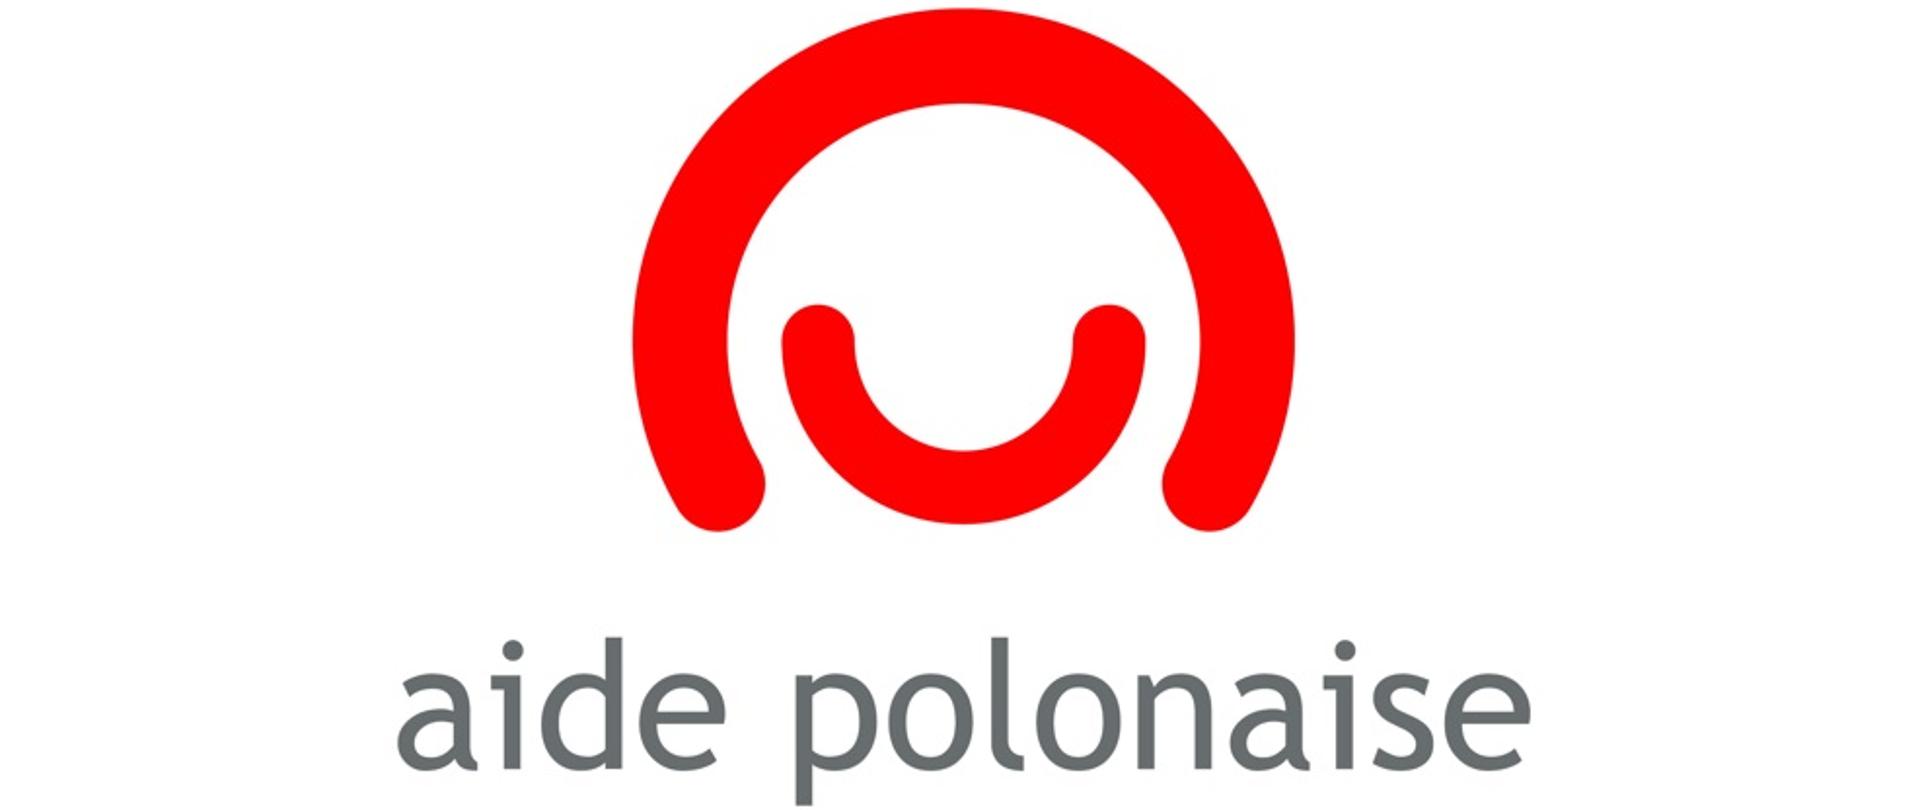 Aide polonaise